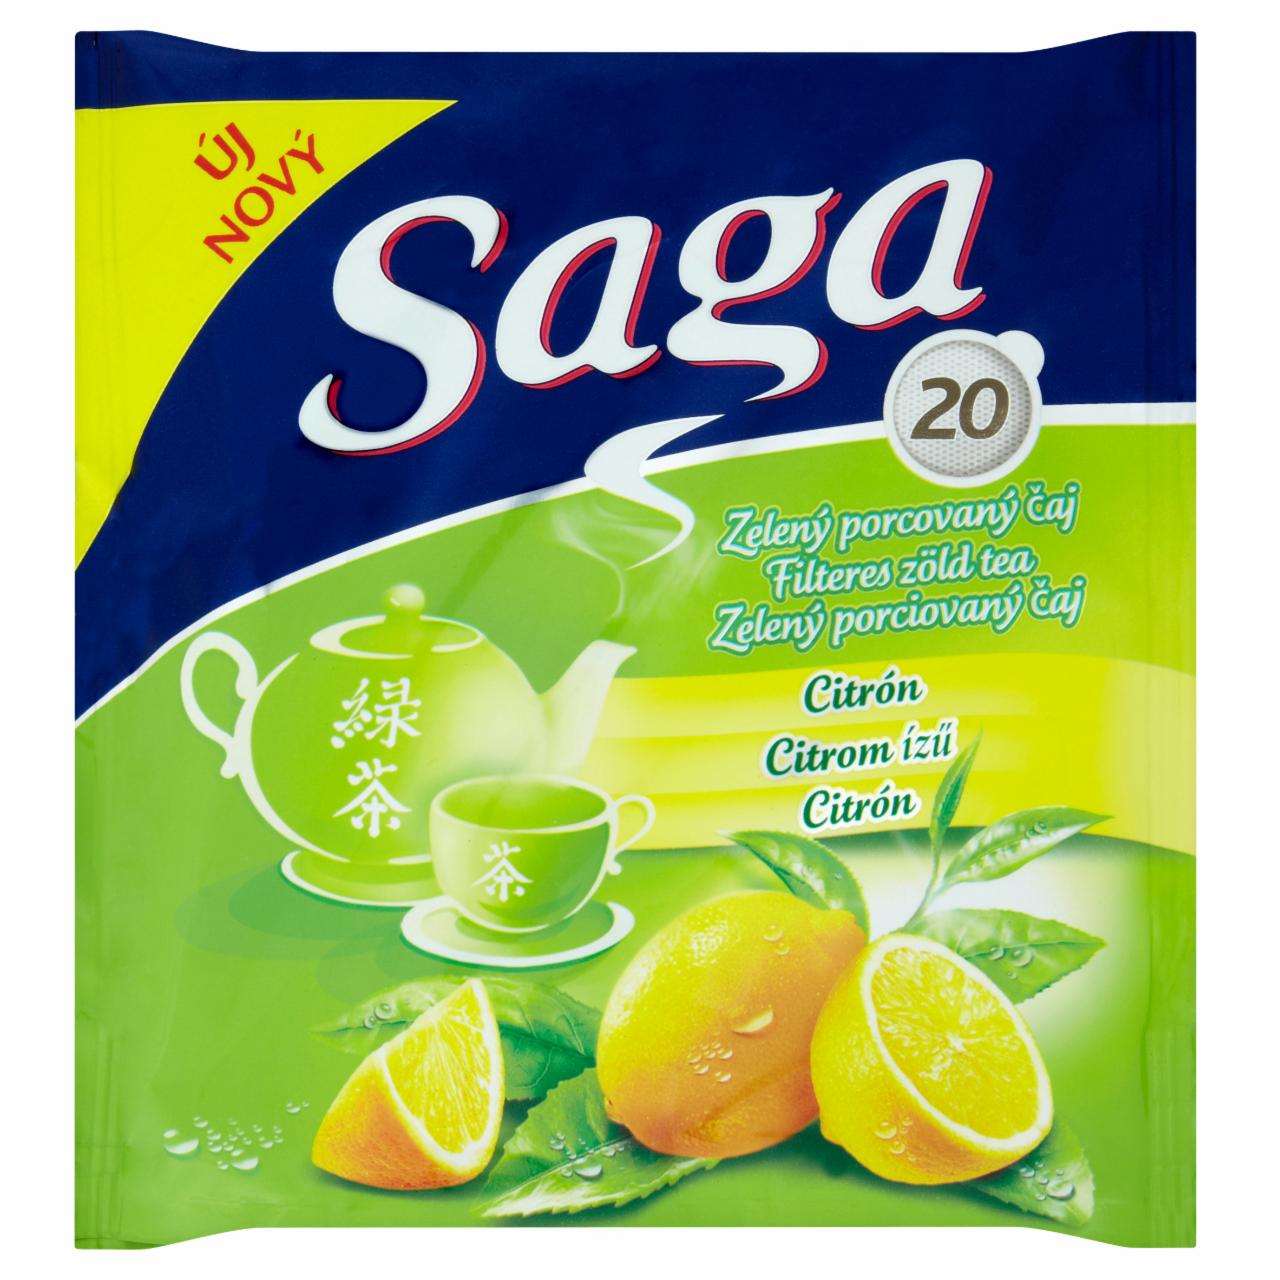 Képek - Saga Citrom zöld tea 20 filter